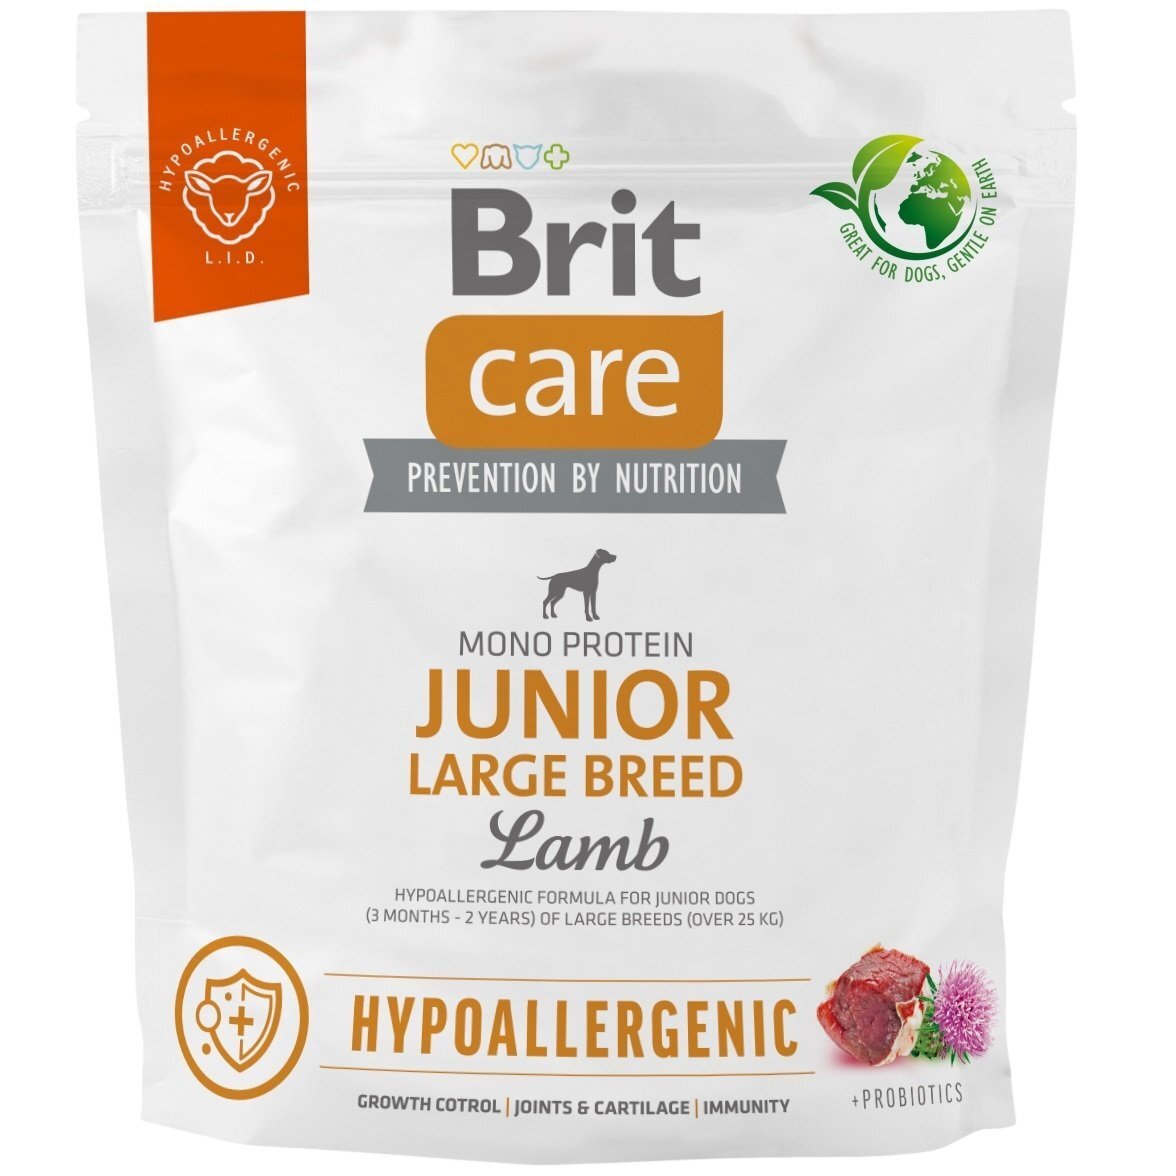 Корм для молодых собак больших пород Brit Care Dog Hypoallergenic Junior Large Breed гипоаллергенный с ягненком 1кг фото 1